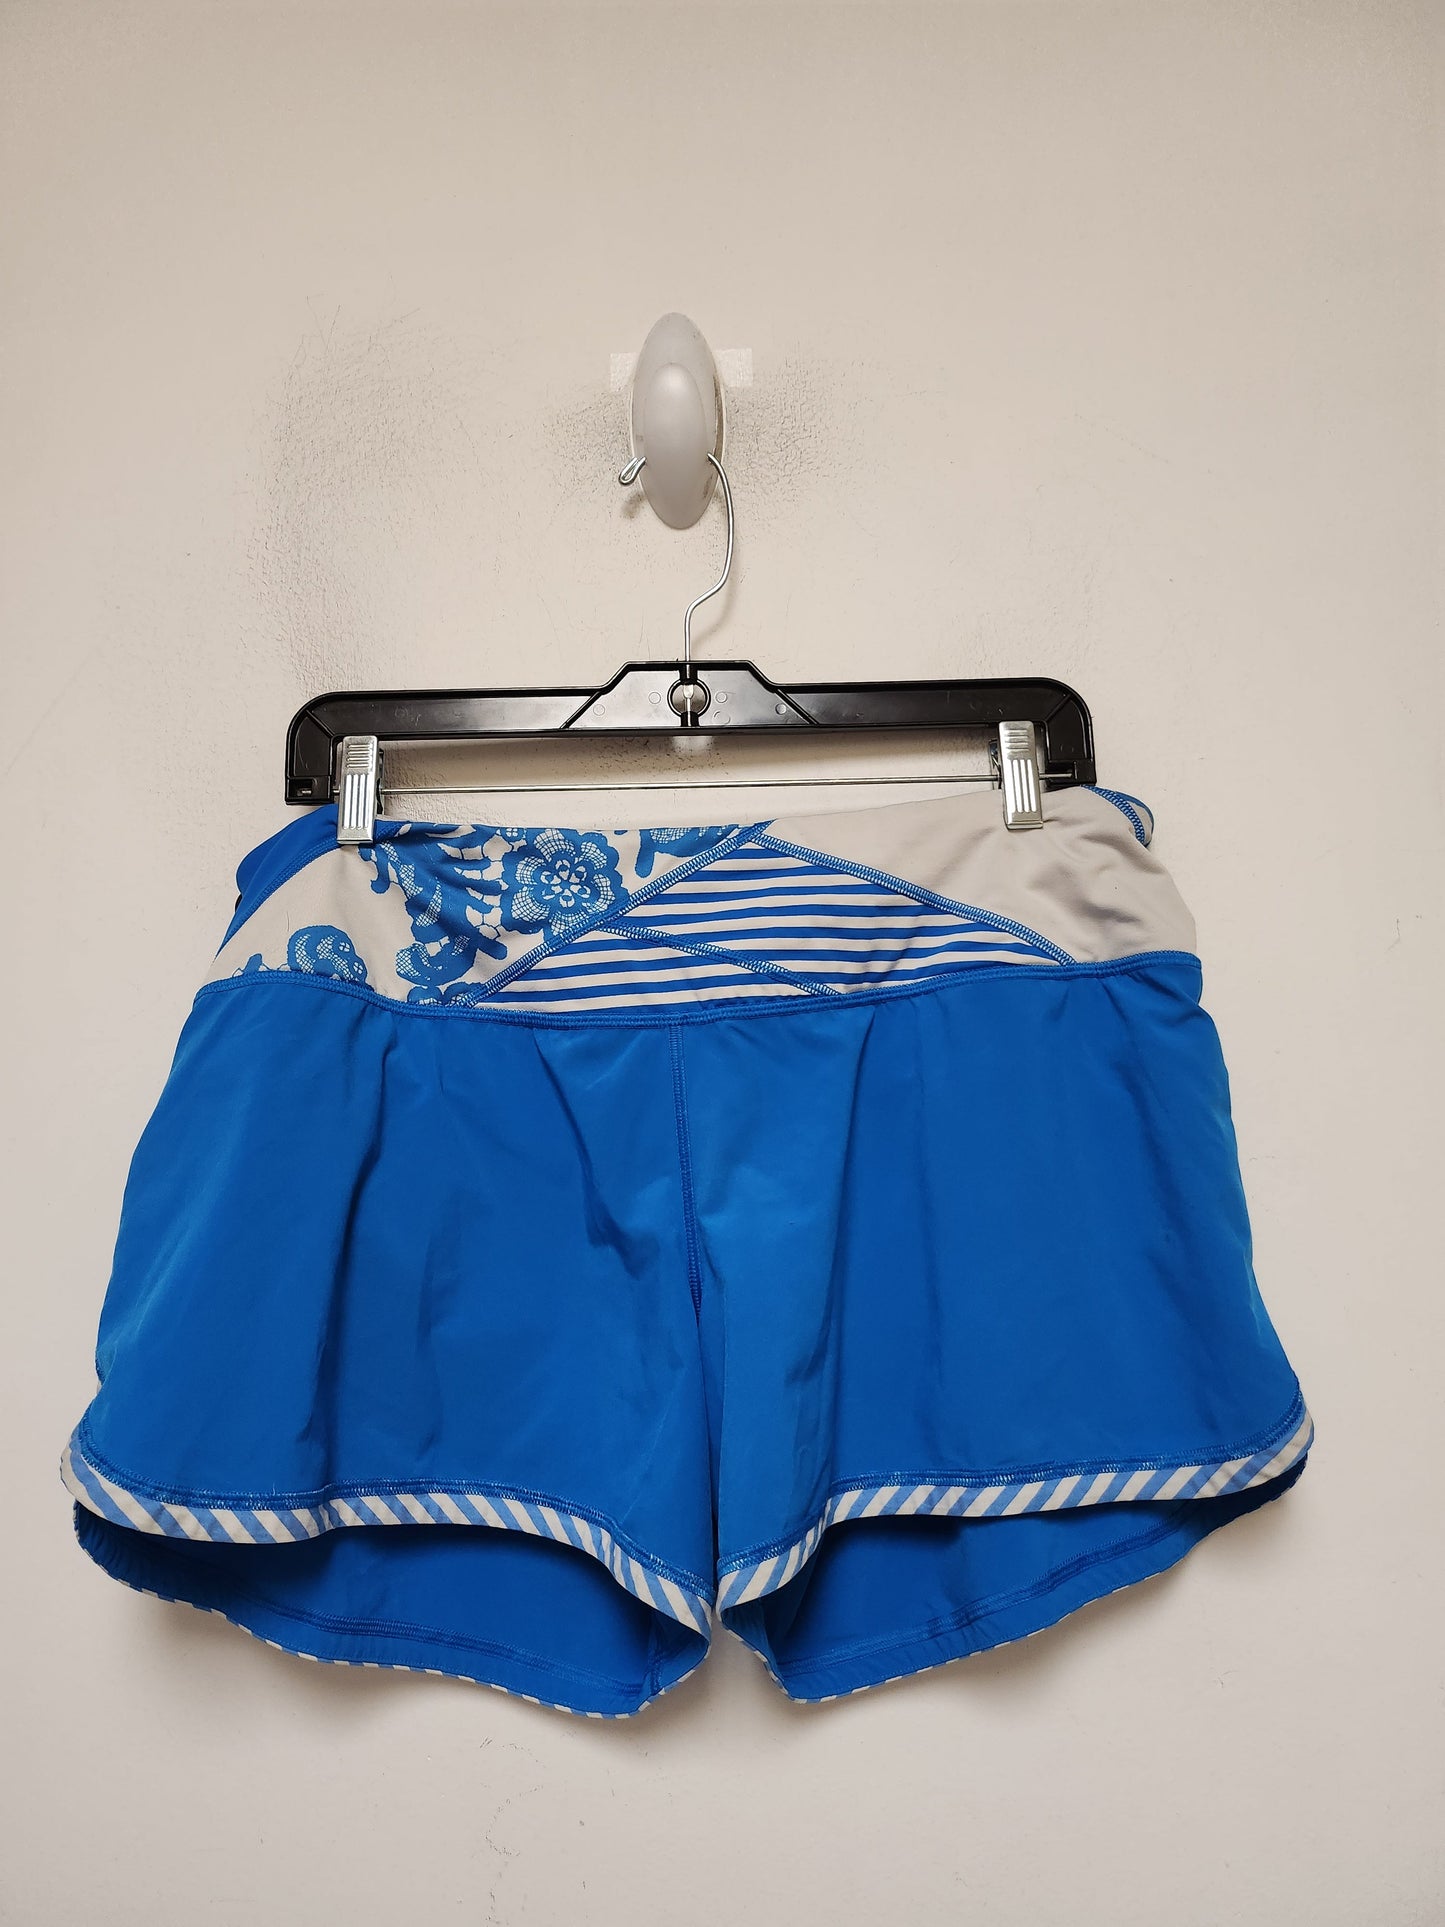 Blue & White Athletic Shorts Lululemon, Size 10